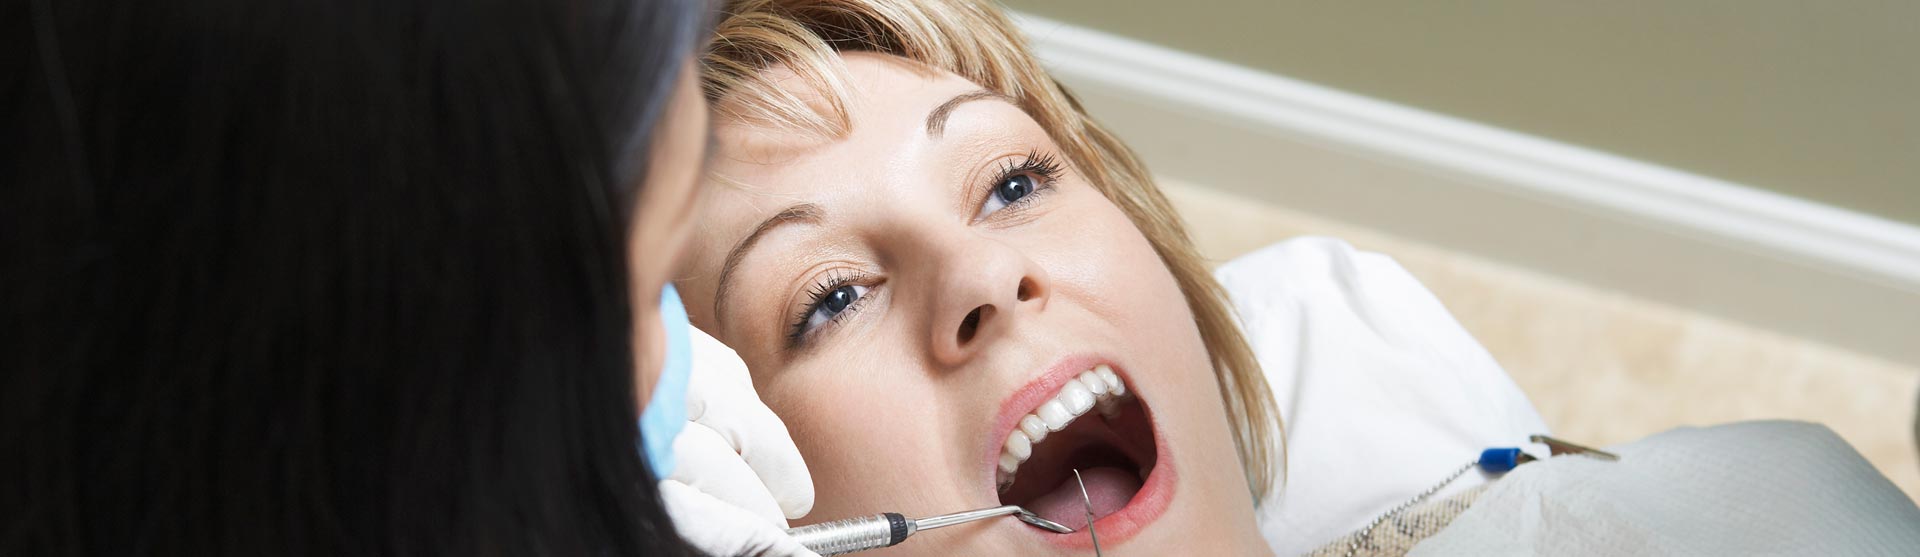 Dentist examining patient's invisalign braces